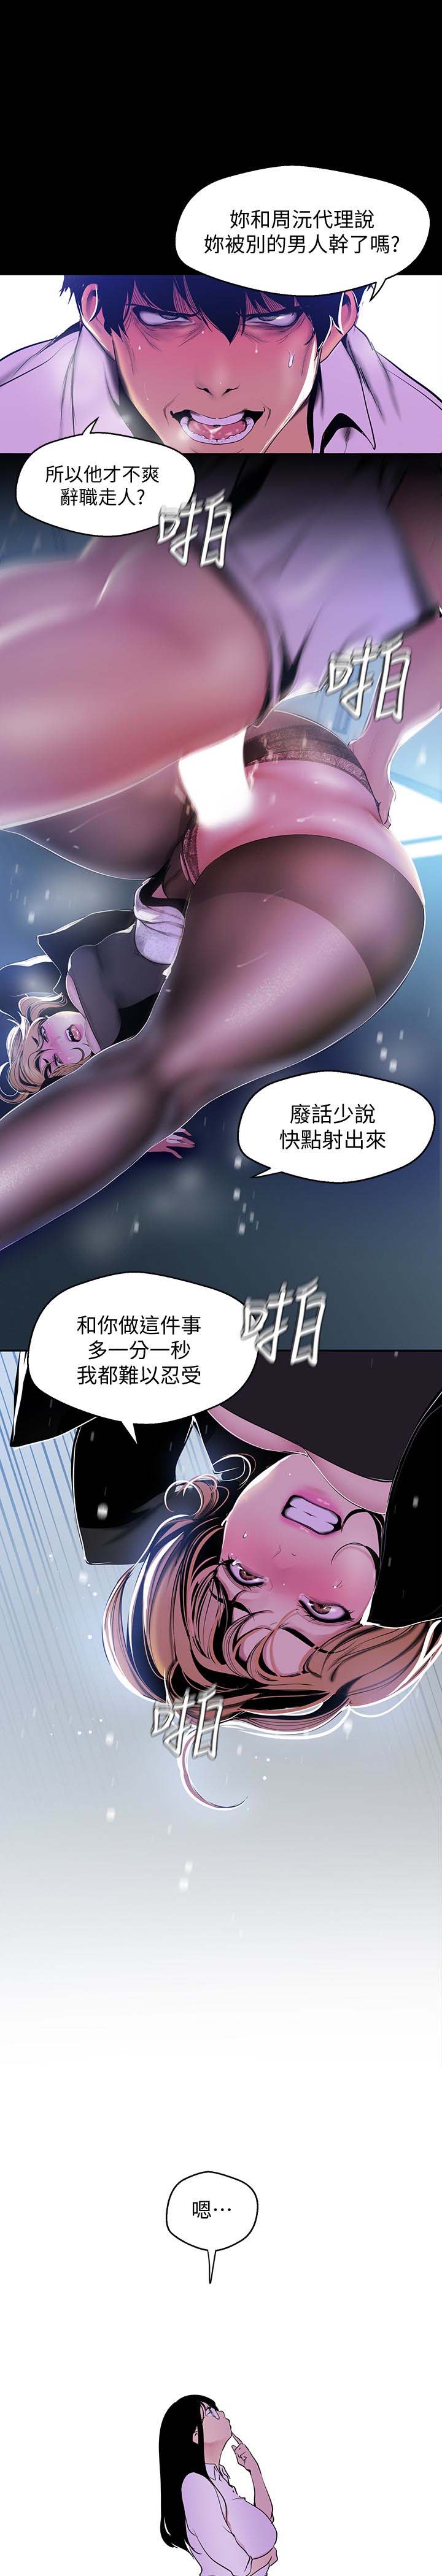 《美丽新世界》漫画 第51话-霸王硬上弓的快感